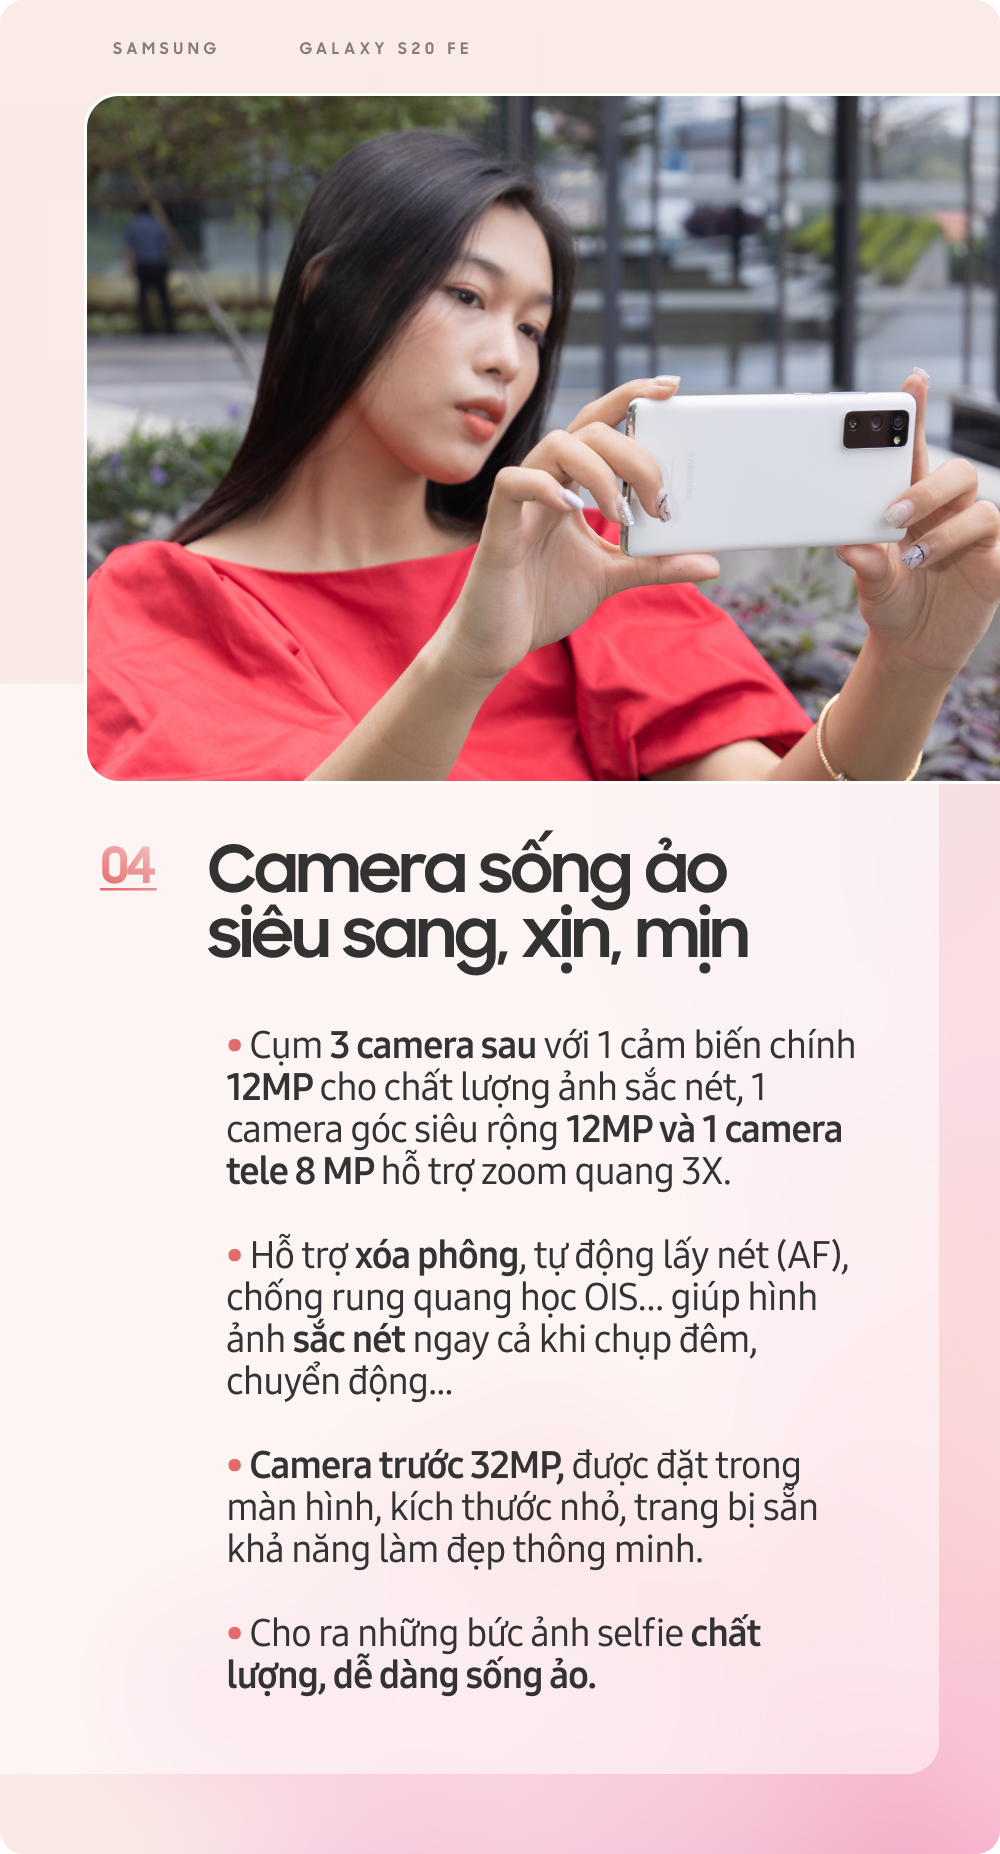 QC] Samsung Galaxy S20 FE: Smartphone dành cho giới trẻ sành điệu